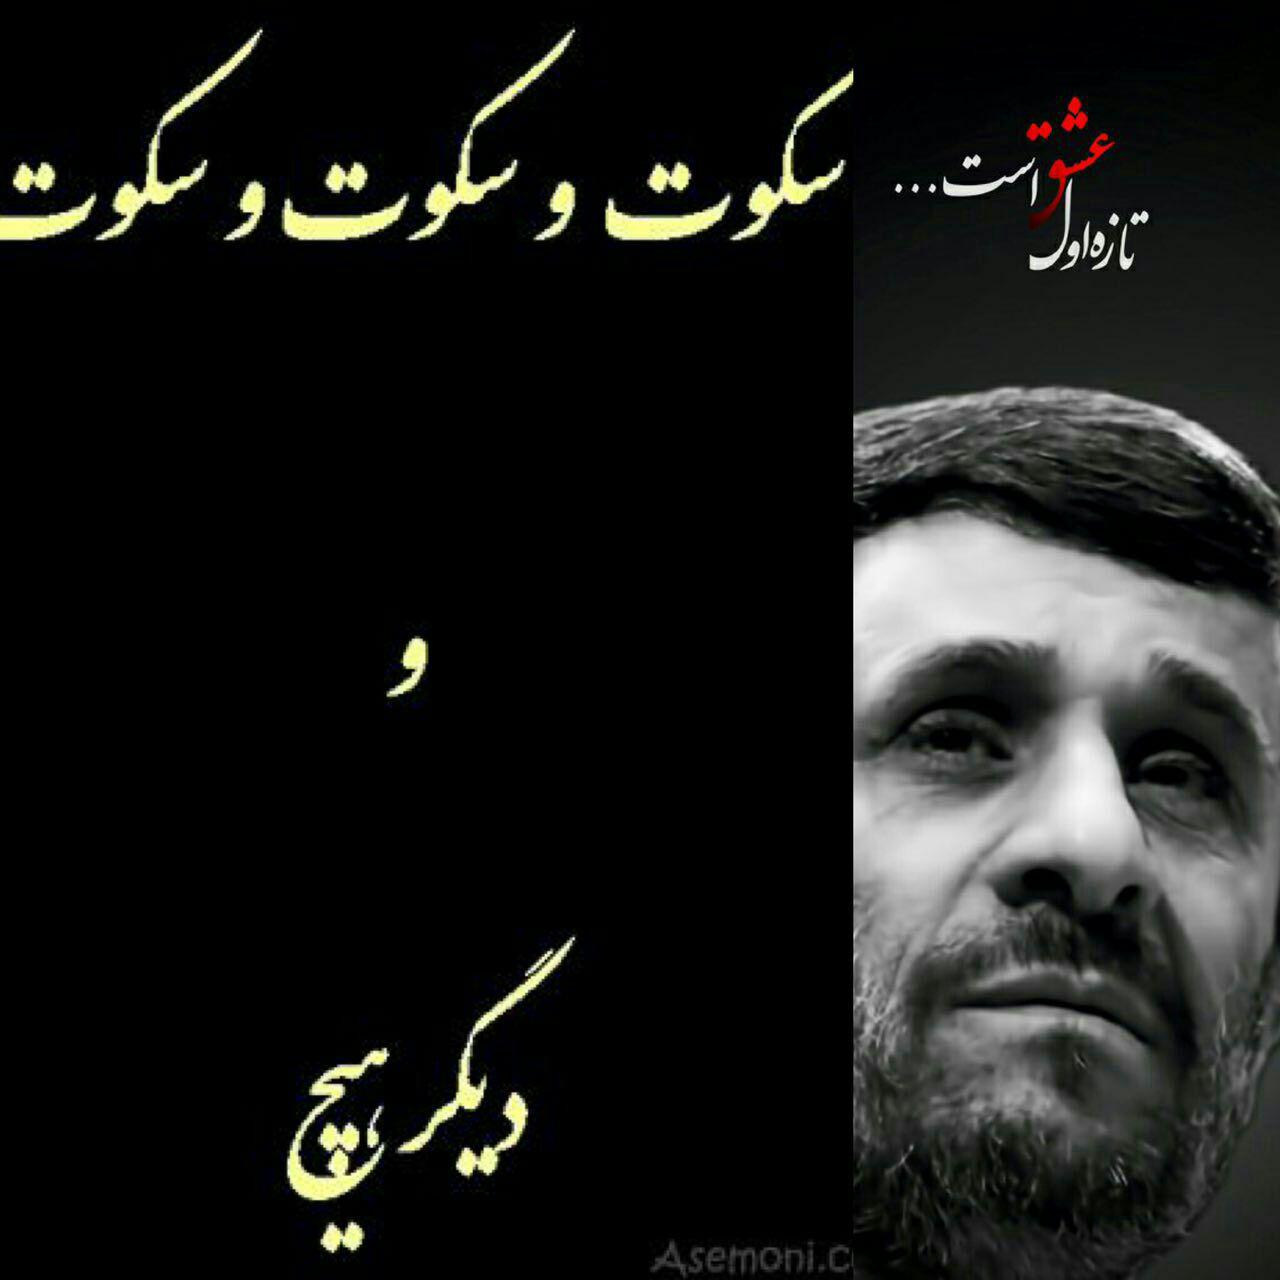 دو پوستری که نزدیکان احمدی نژاد نسبت به جریانات اخیر منتشر کرده اند